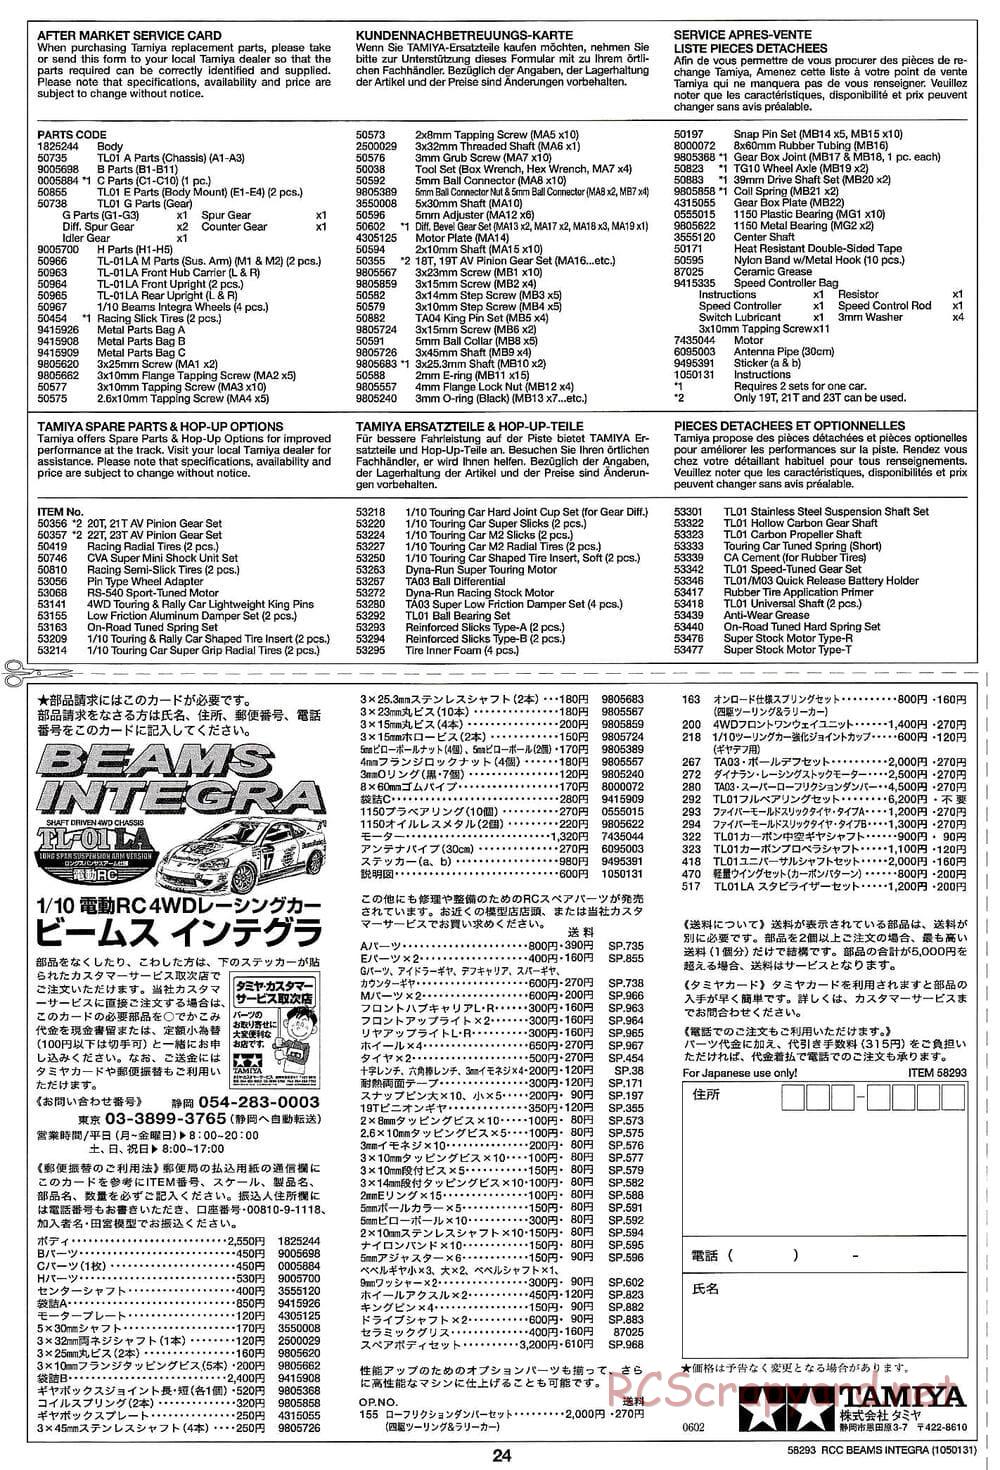 Tamiya - Beams Integra - TL-01 LA Chassis - Manual - Page 24